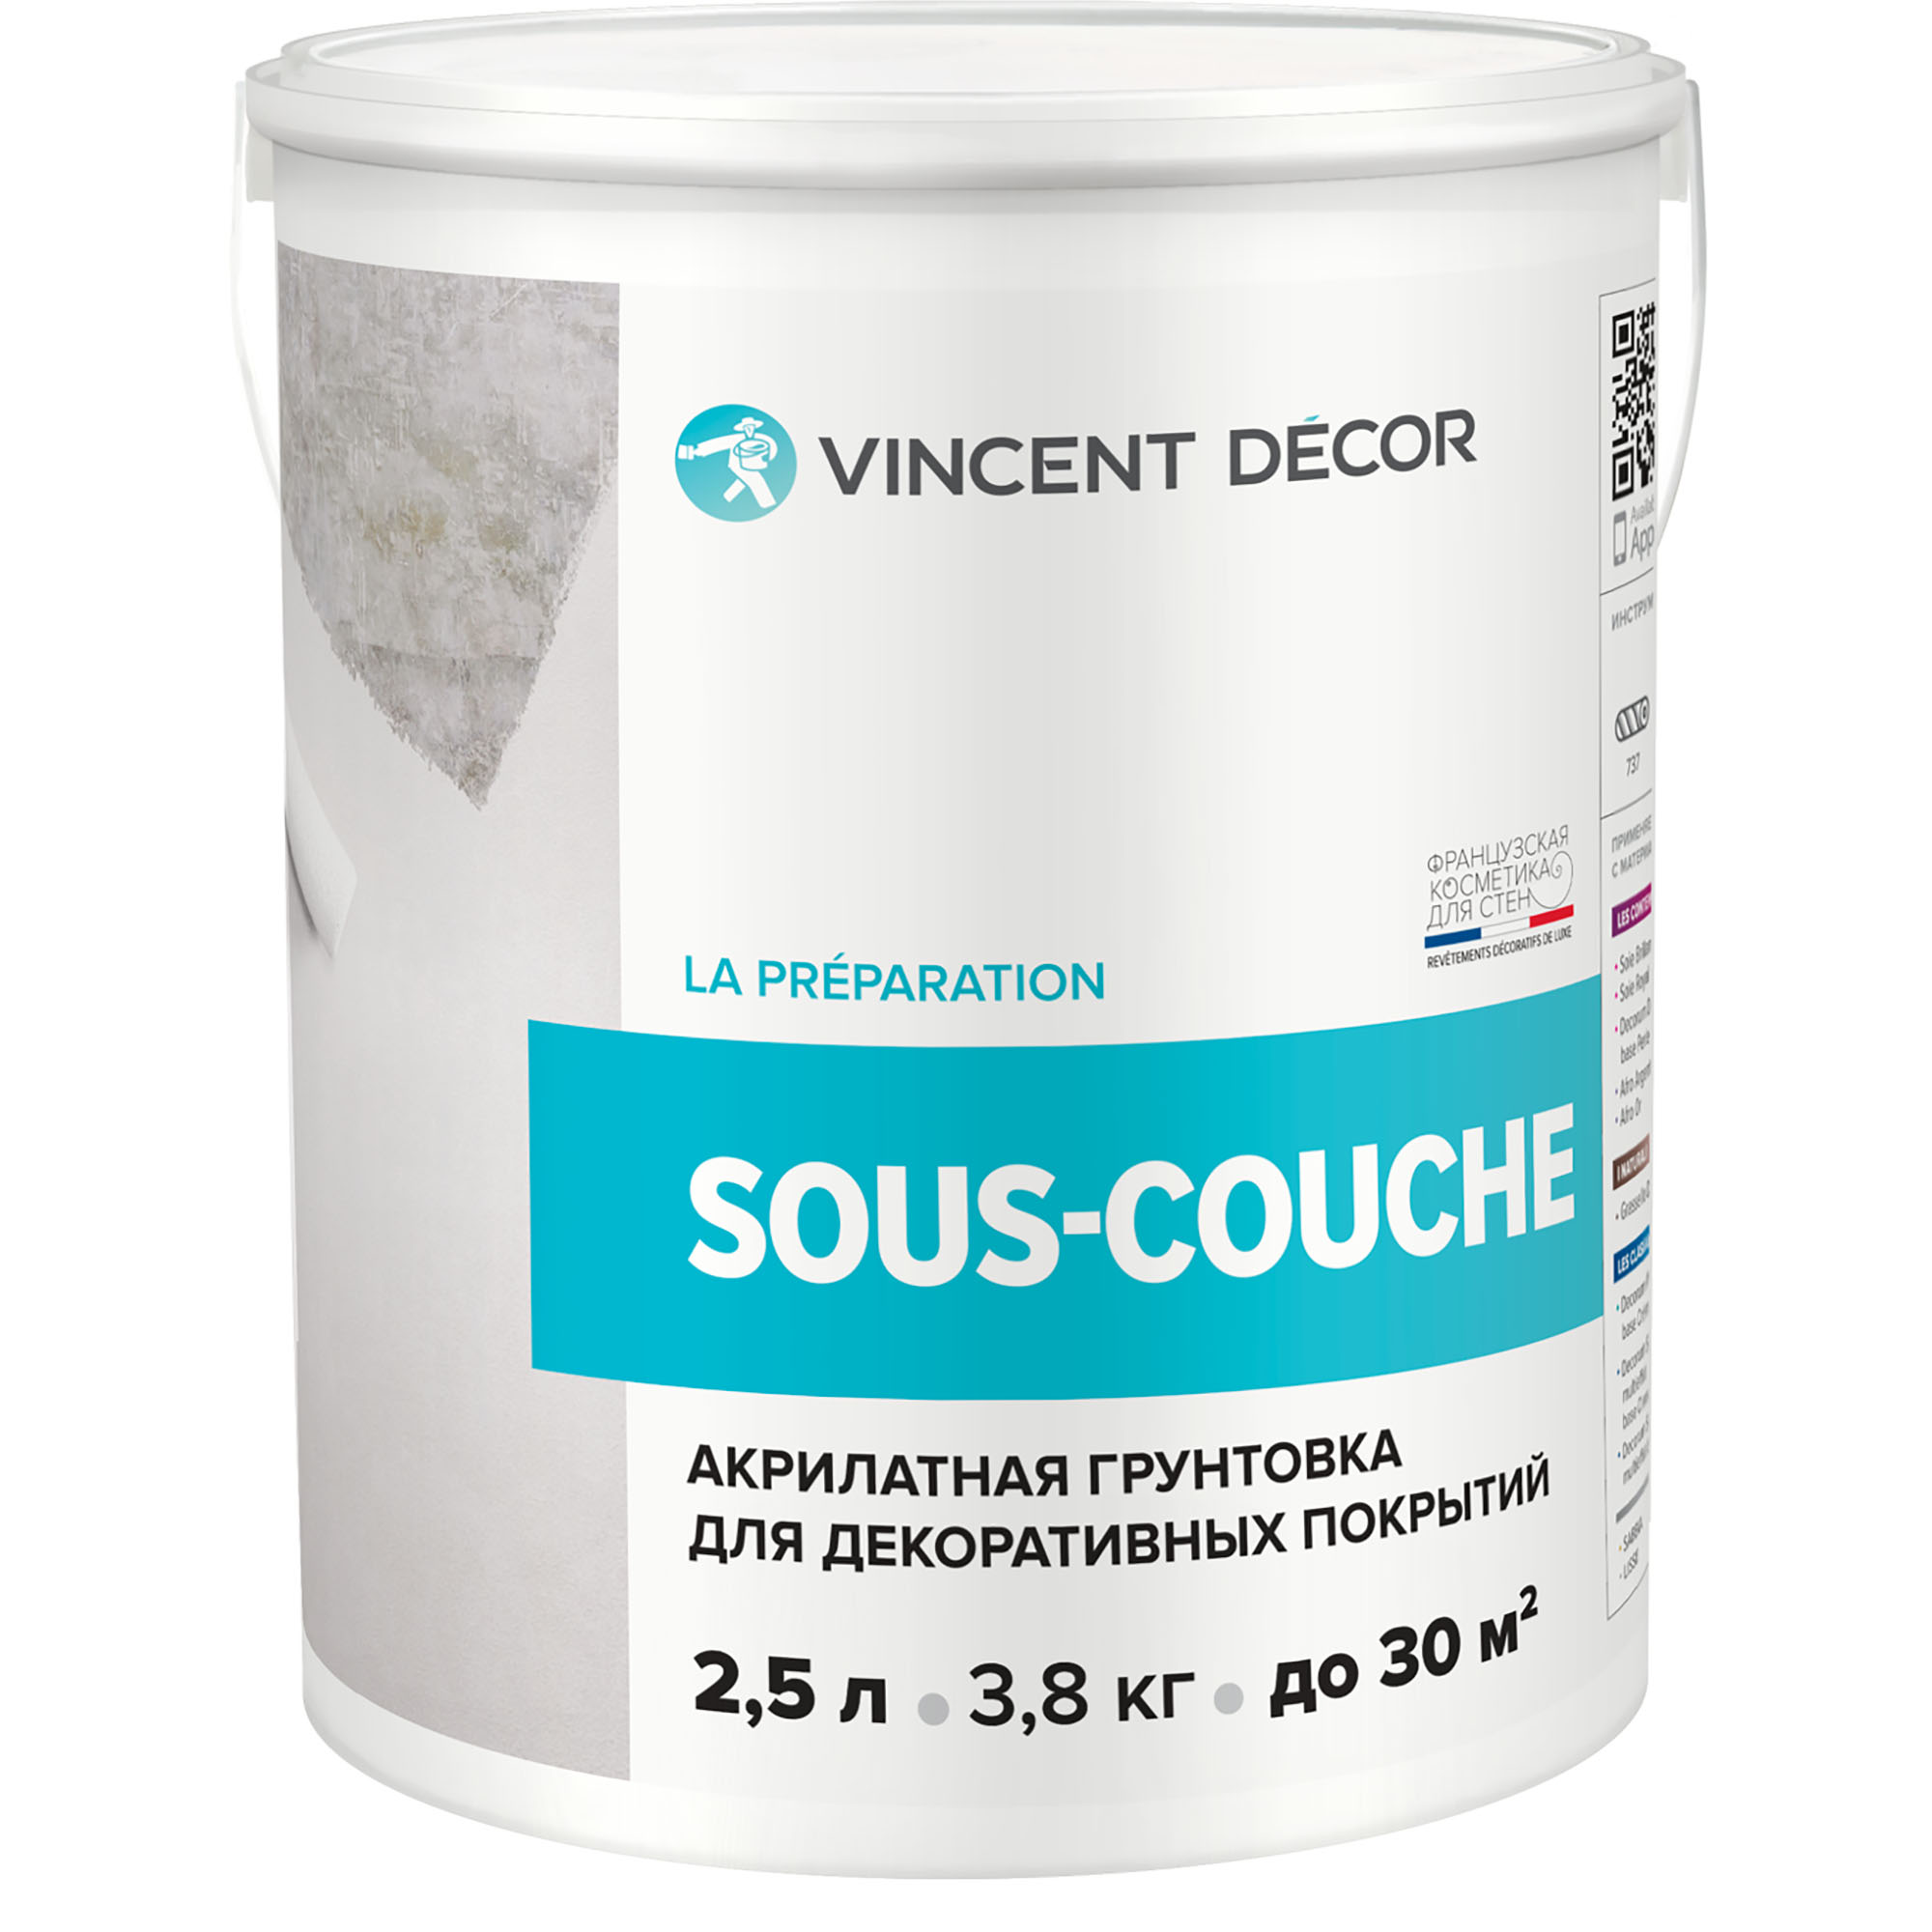 Грунтовка для декоративных покрытий Vincent Decor Sous-Couсhe 2,5 л грунтовка vincent g 2 конт4 кг акрилатная 096 011